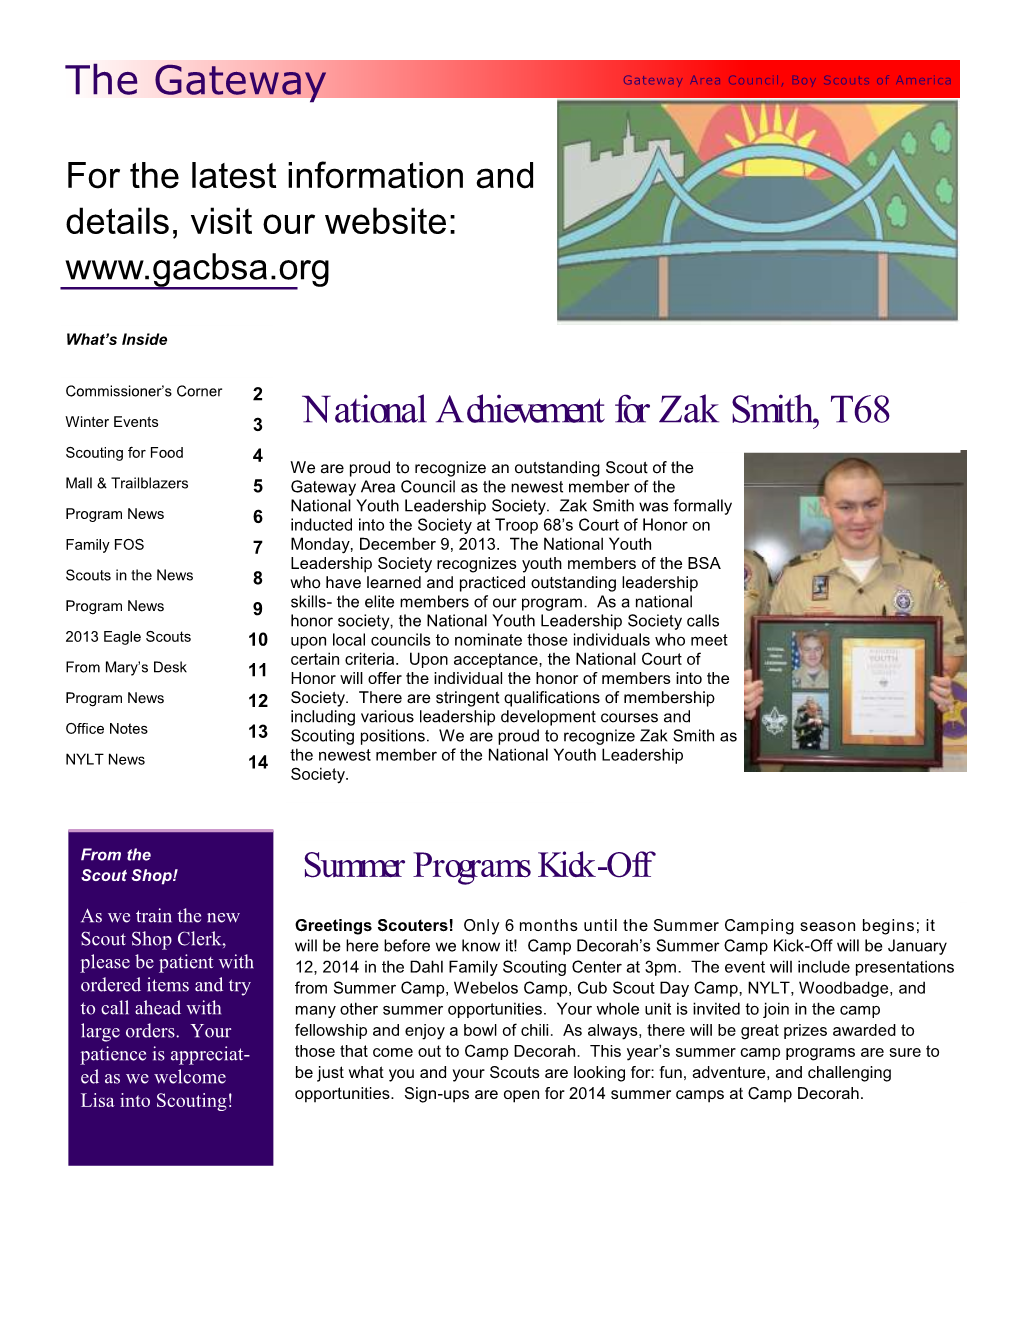 National Achievement for Zak Smith, T68 the Gateway